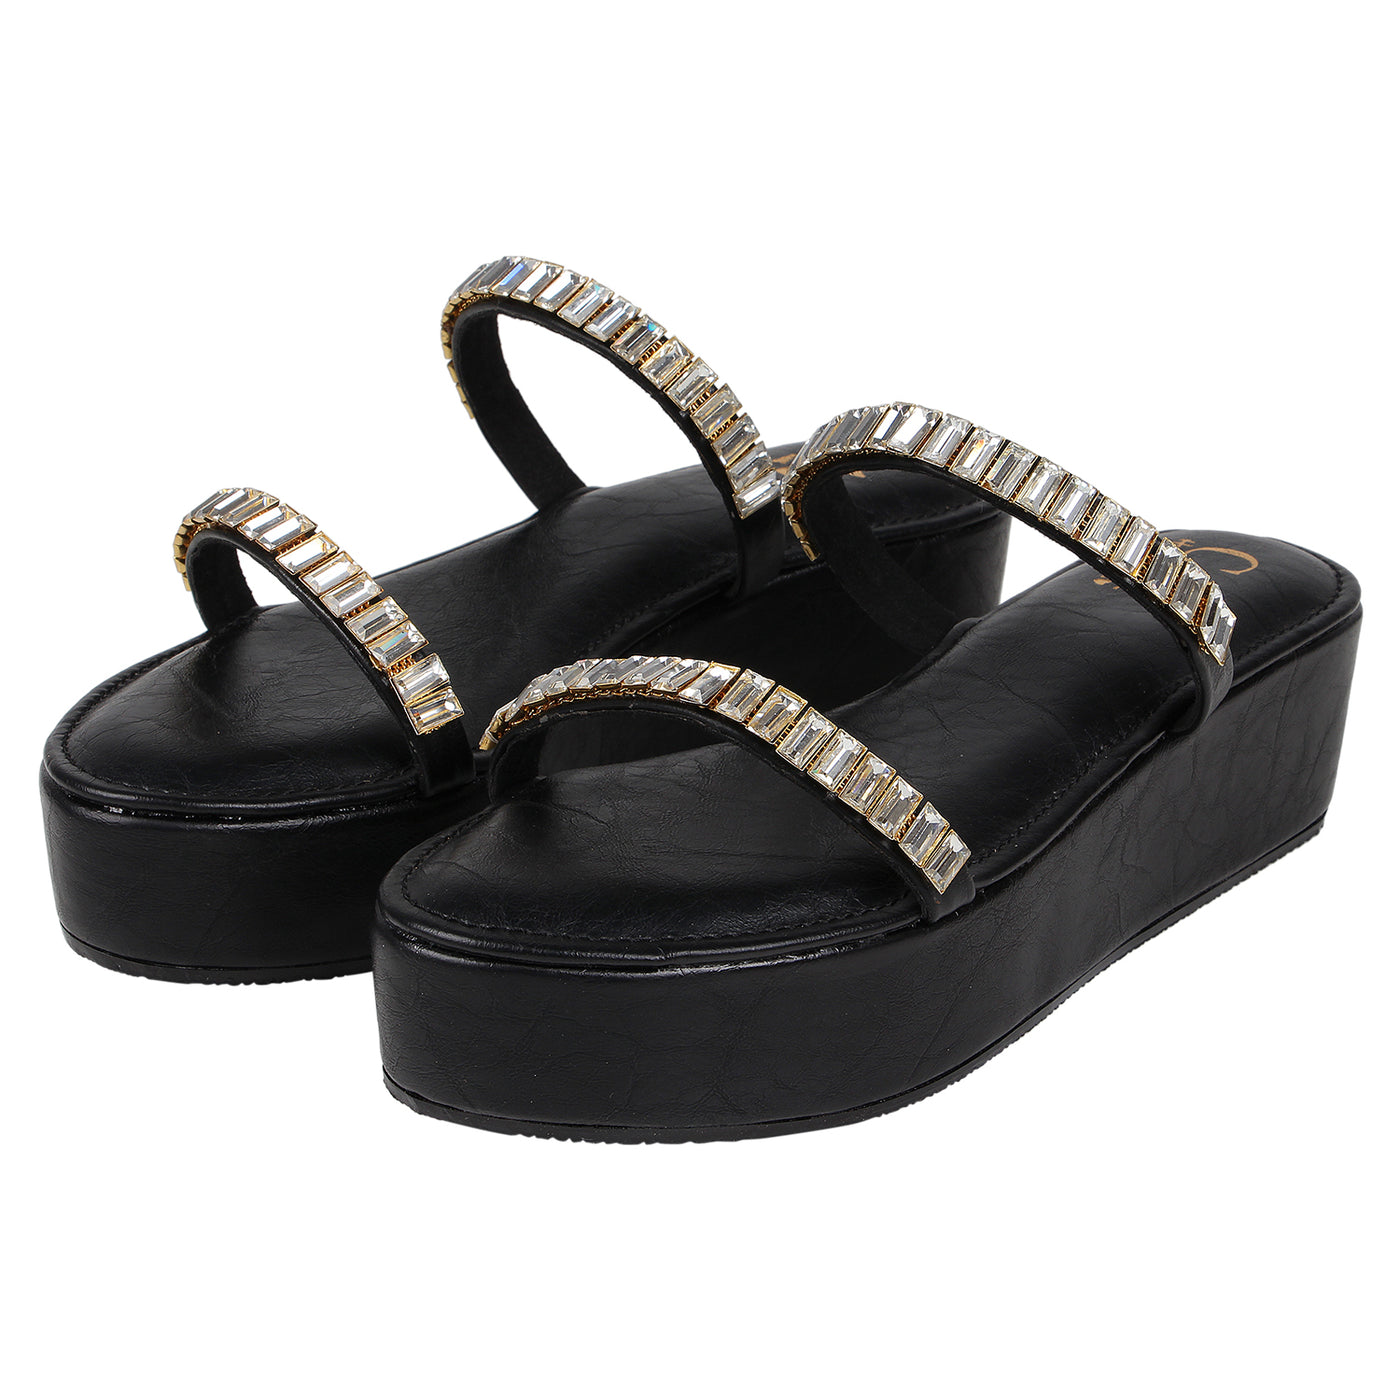 Two Strap Embellished Heels Black Online India